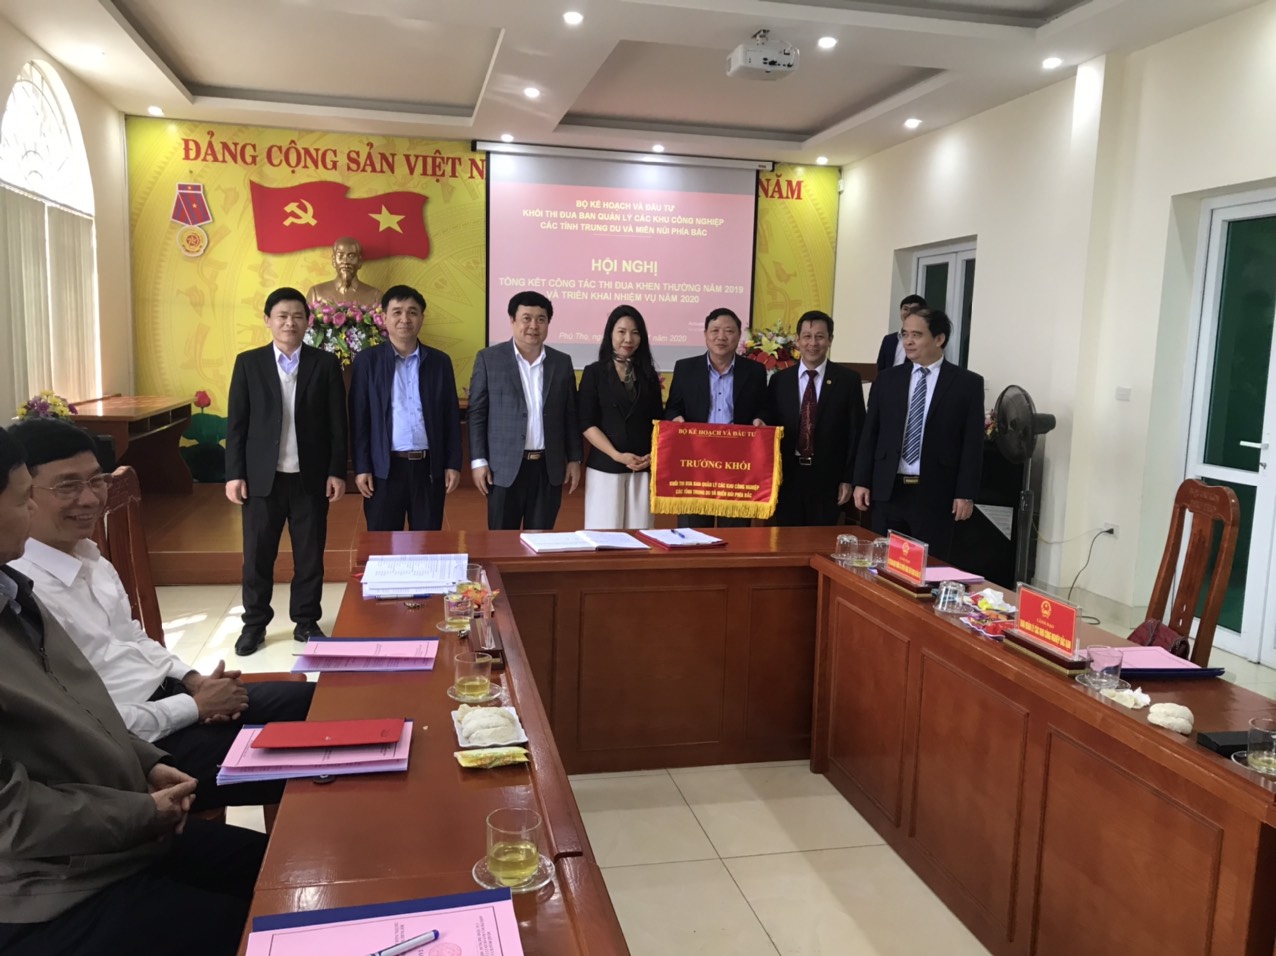 Hội nghị tổng kết công tác thi đua năm 2019 - Khối Thi đua Ban Quản lý các KCN 7 tỉnh Trung du và...